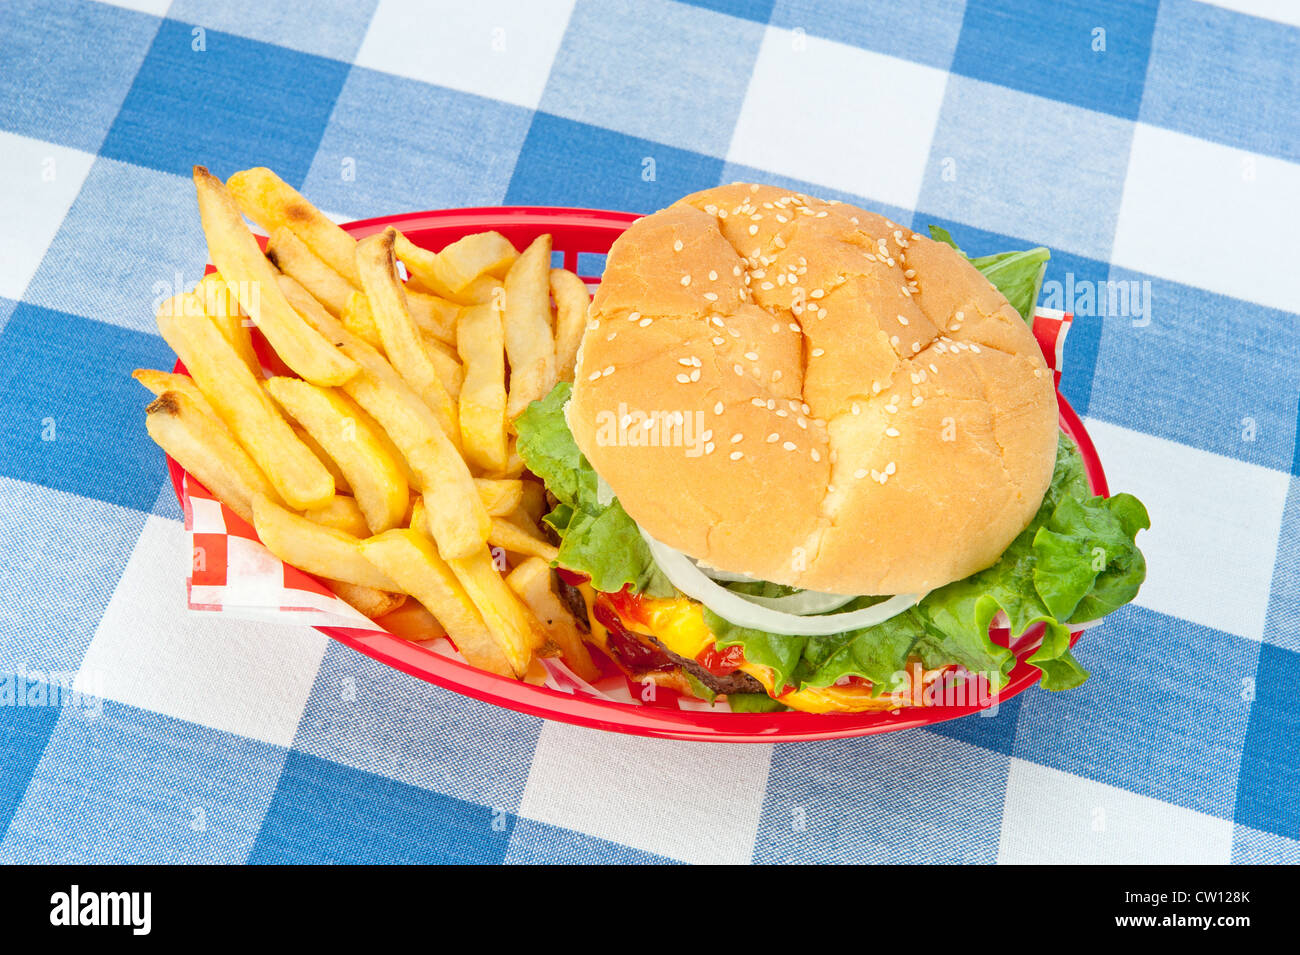 Ein Top-down-Ansicht für einen Hamburger mit Pommes frites in einem roten Korb auf einem Picknick-Tischdecke. Stockfoto